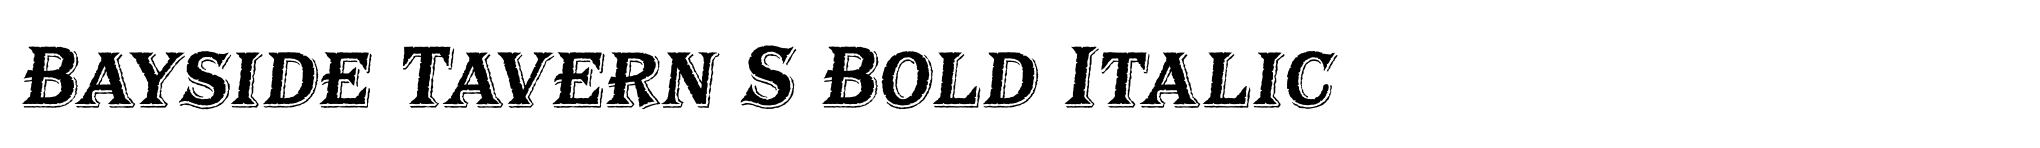 Bayside Tavern S Bold Italic image